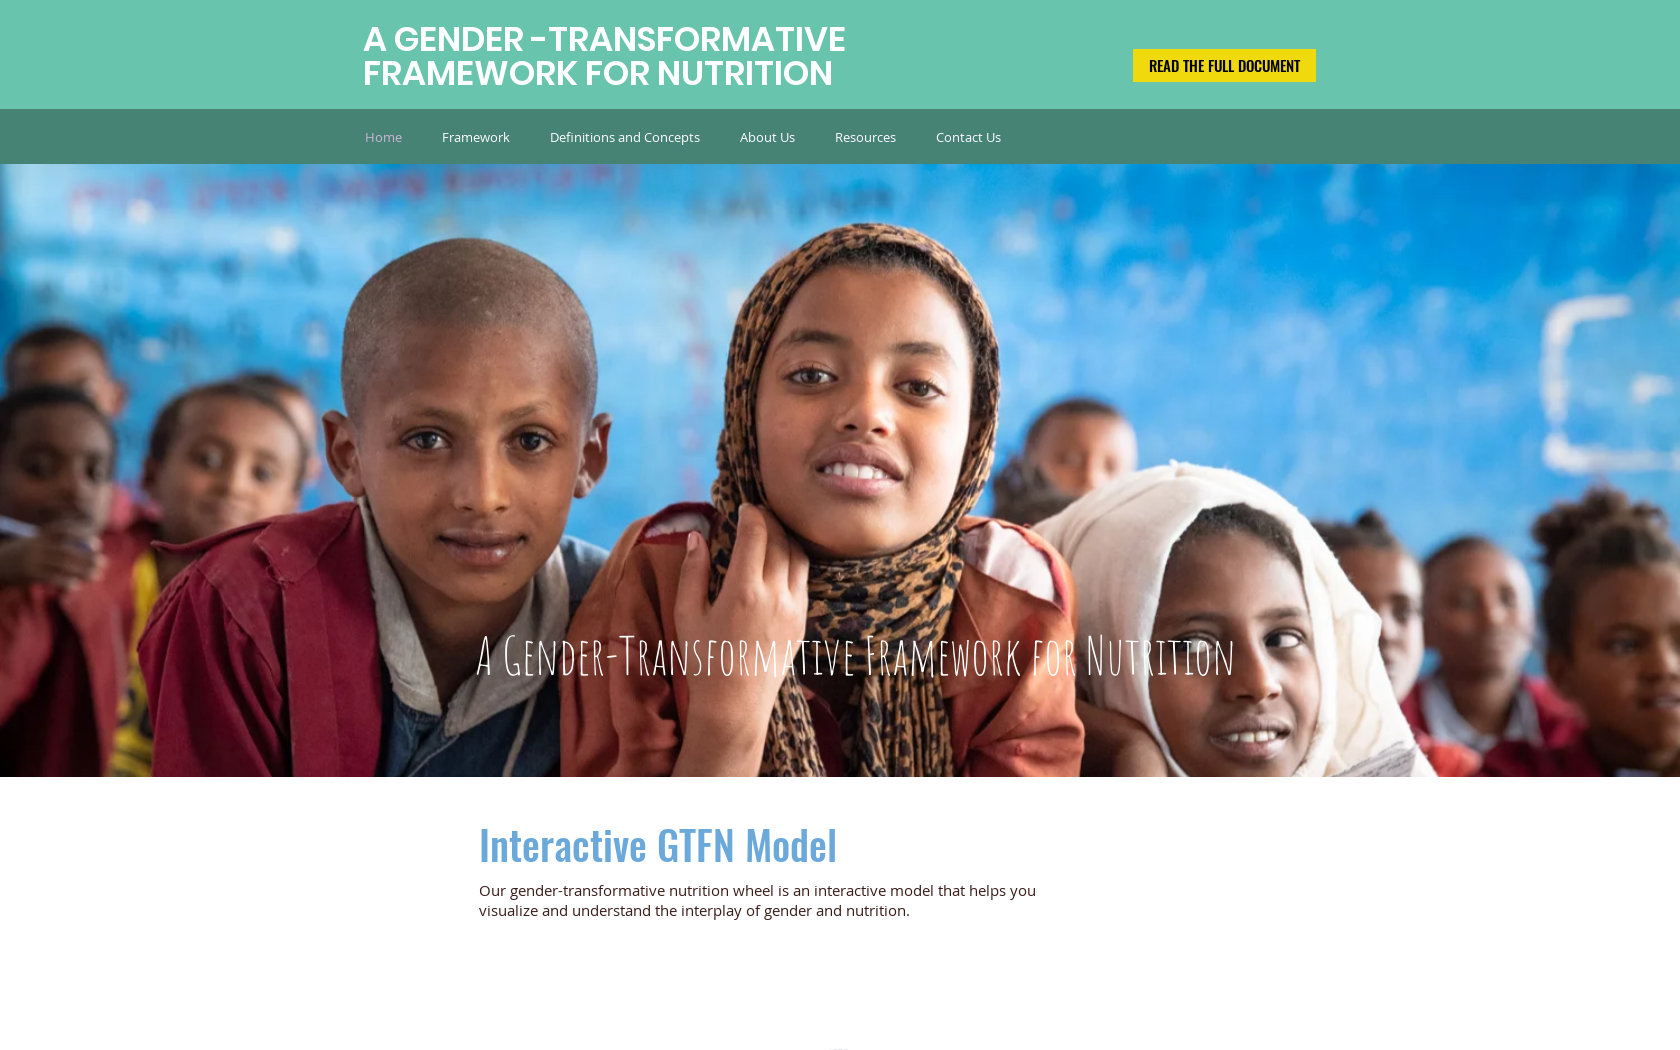 A Gender Transformative Framework for Nutrition: Advancing Nutrition and Gender Equality Together